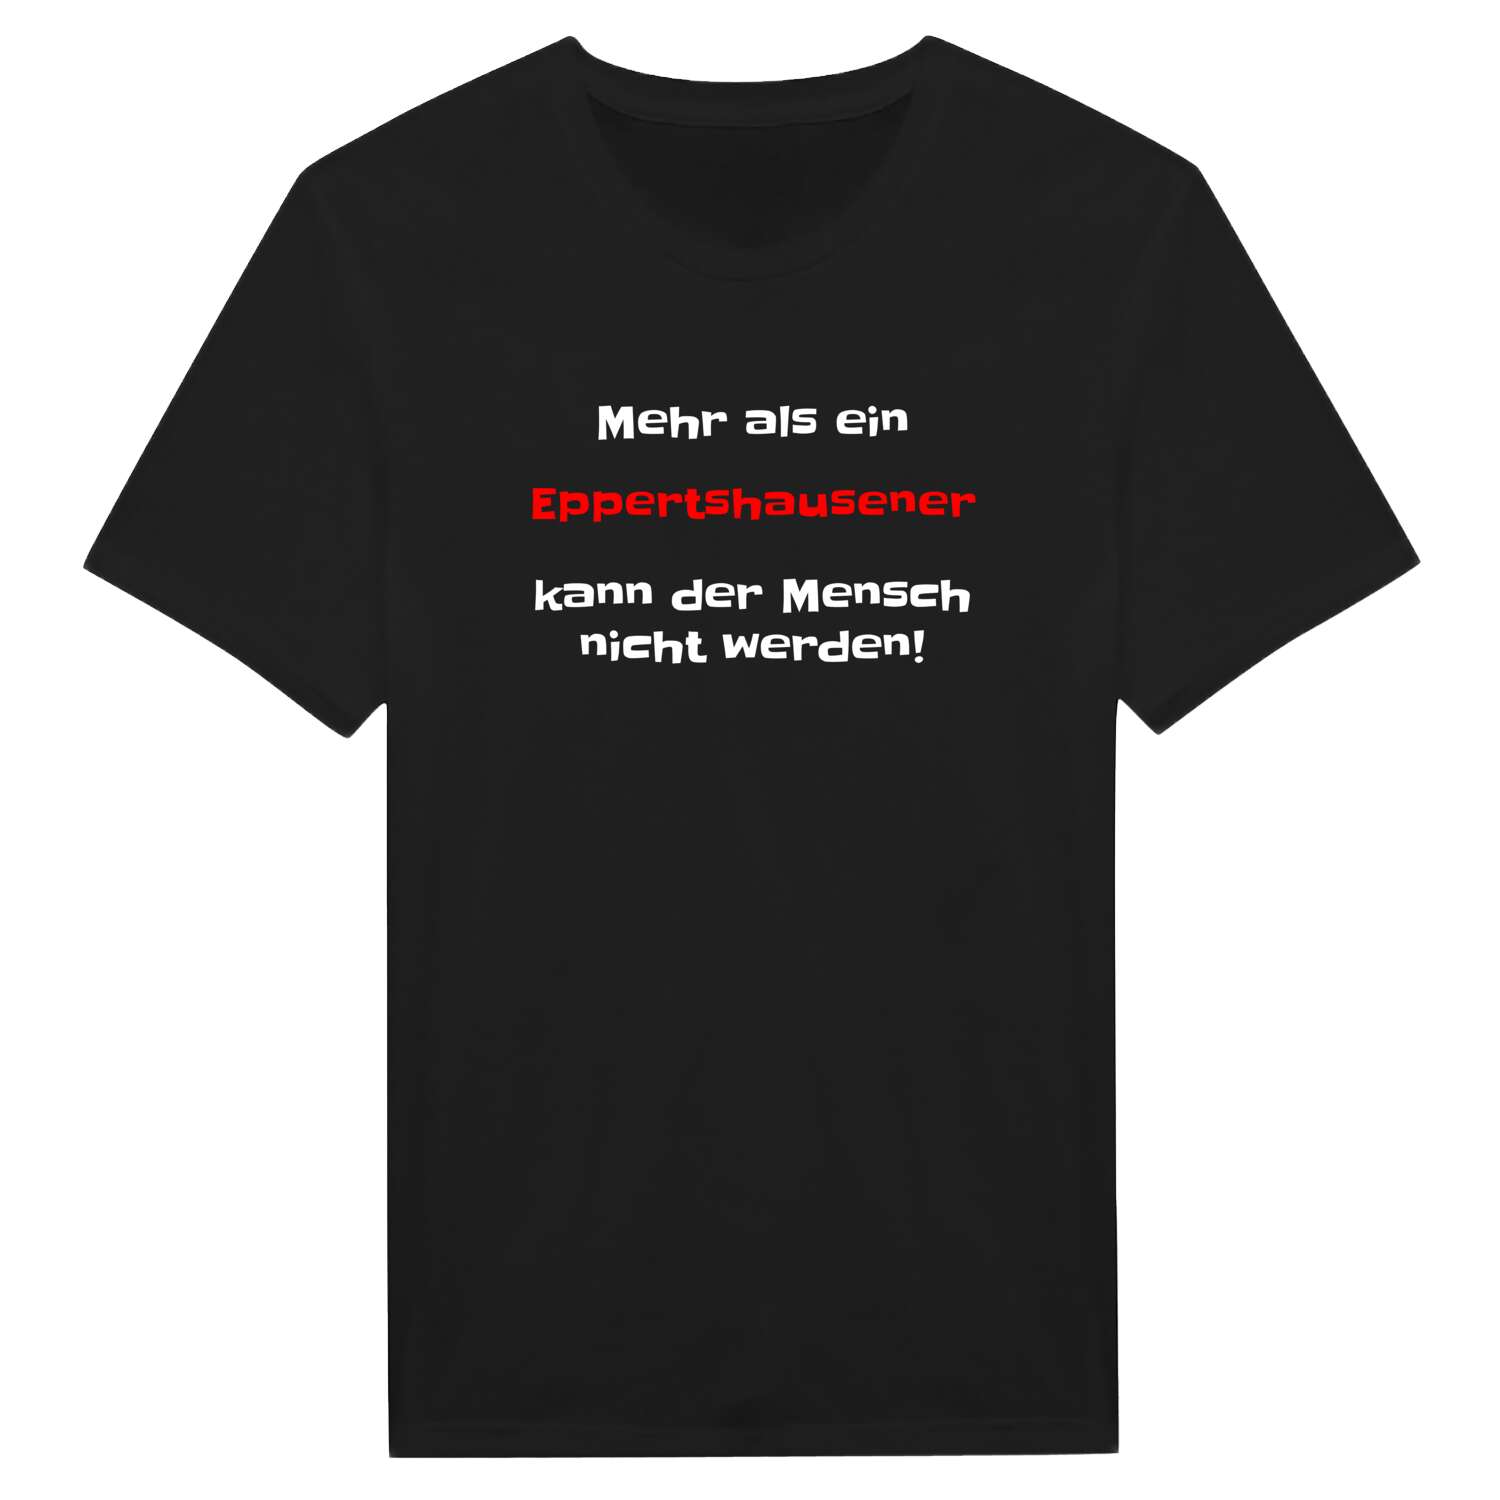 Eppertshausen T-Shirt »Mehr als ein«